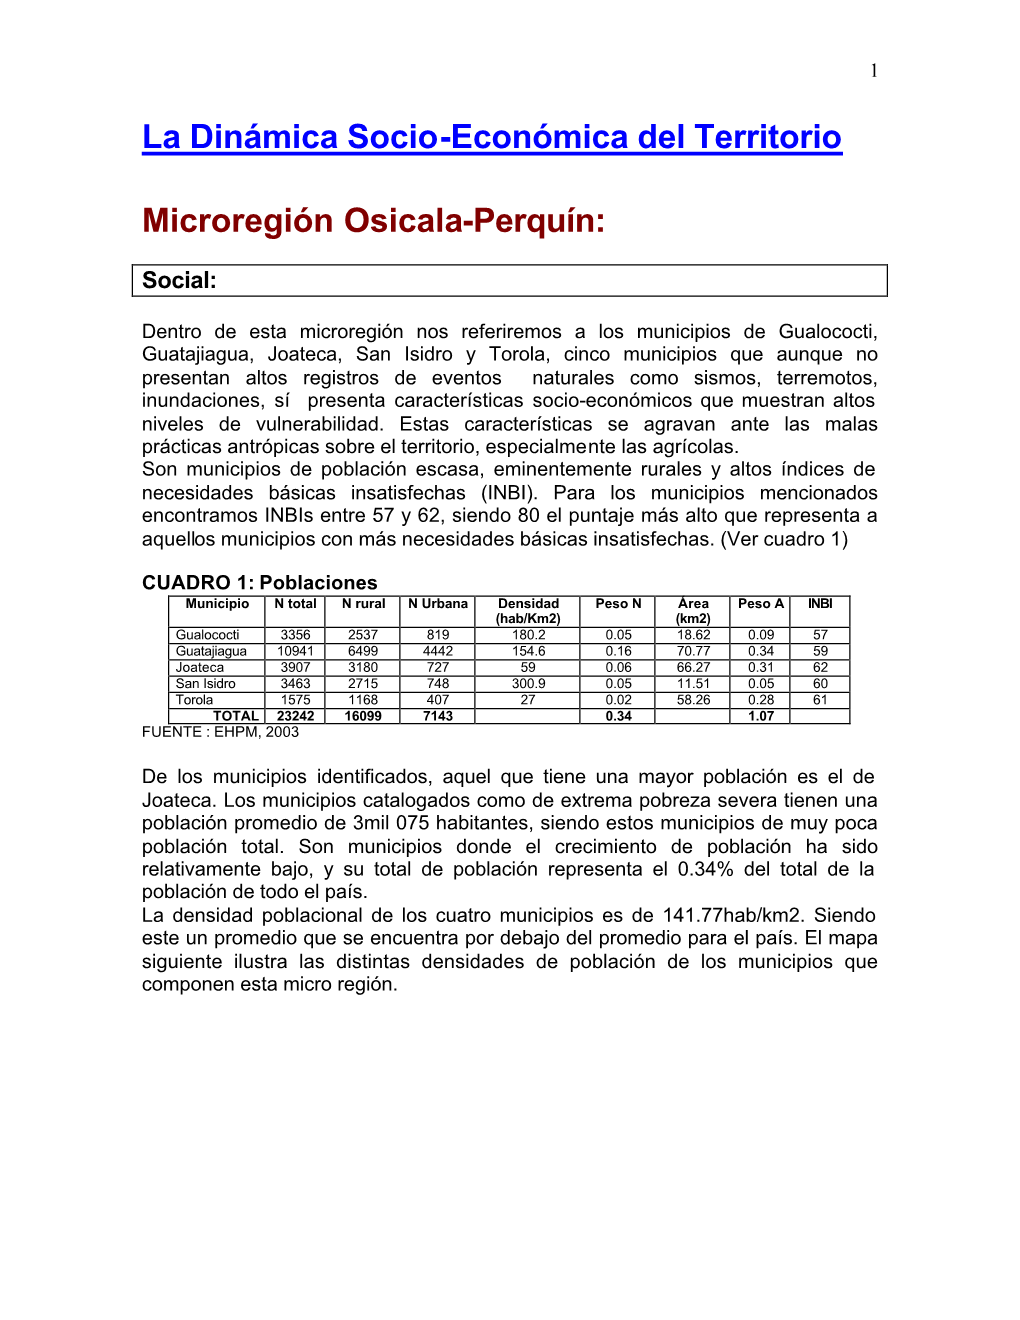 La Dinámica Socio-Económica Del Territorio Microregión Osicala-Perquín